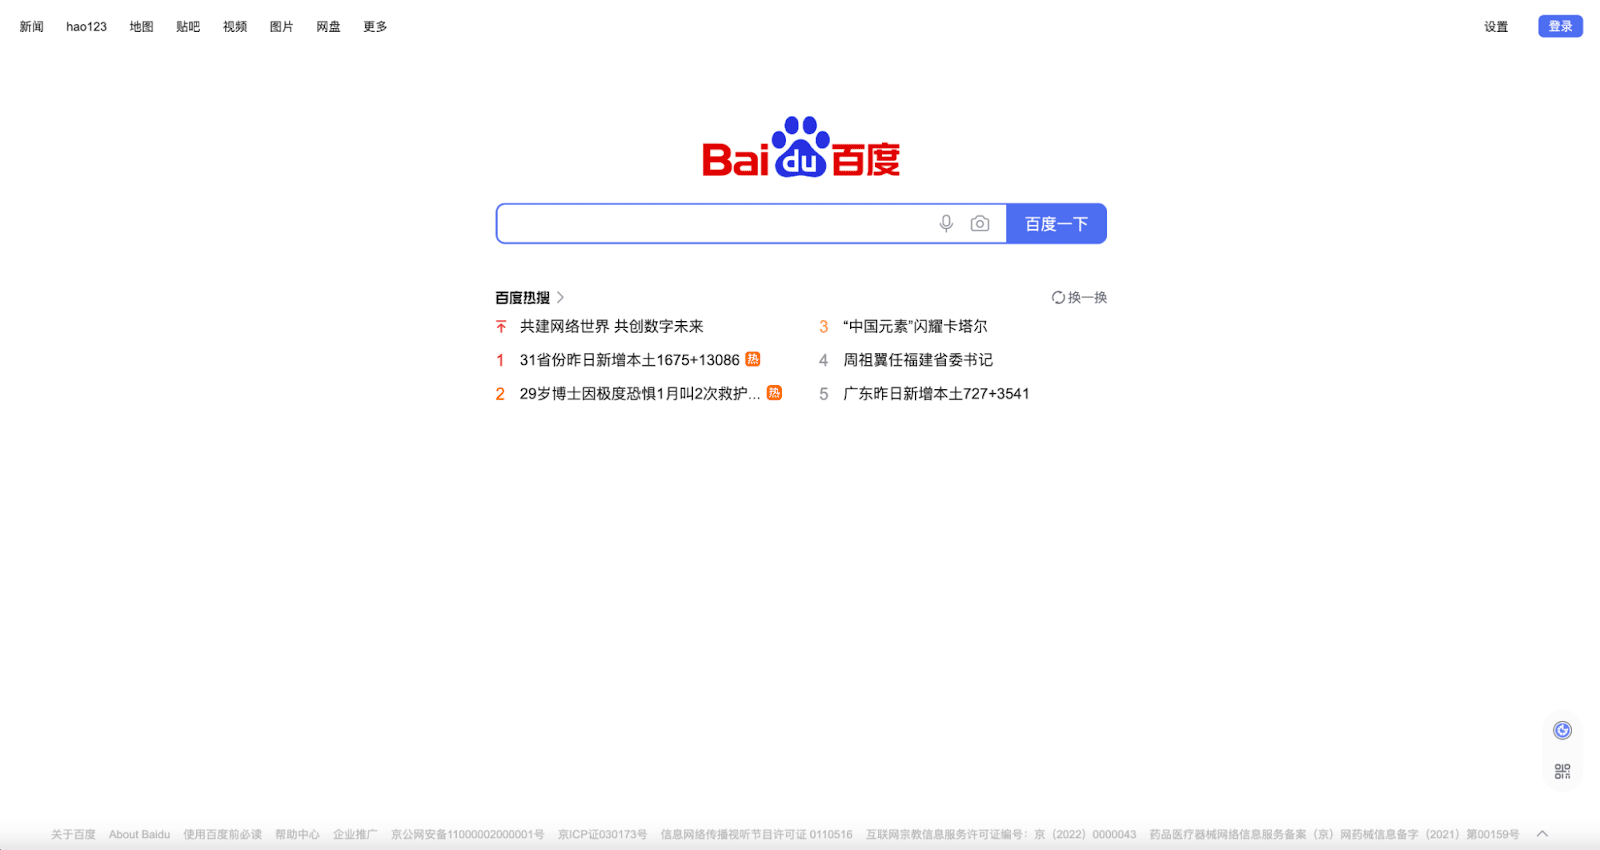 โปรแกรมรวบรวมข้อมูลเว็บ Baidu Spider